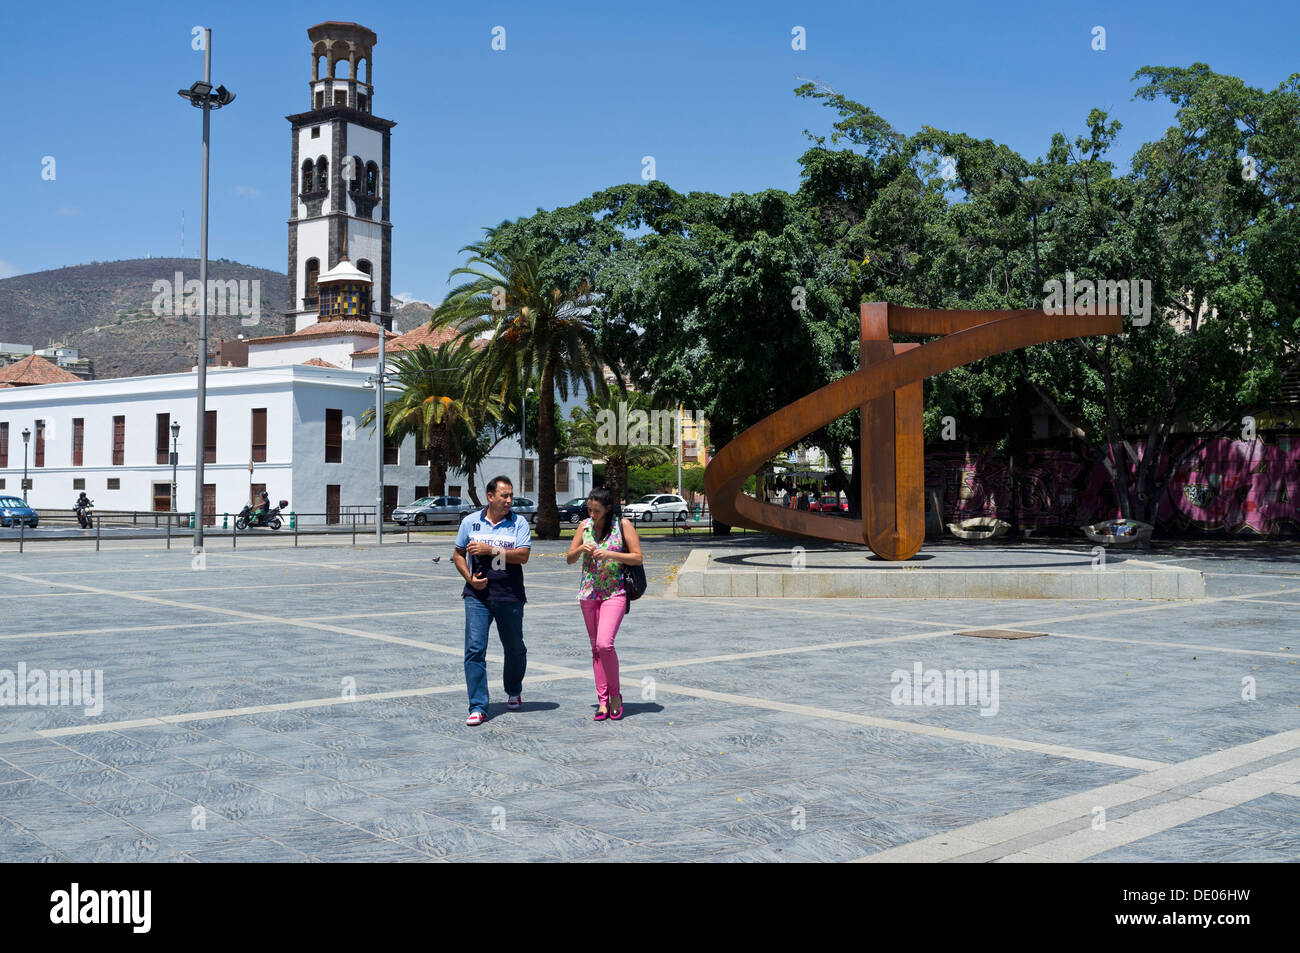 The Plaza de Europa with the sculpture El Sueno de los continentes by sculptor Martin Chirino, Santa Cruz, tenerife, Stock Photo